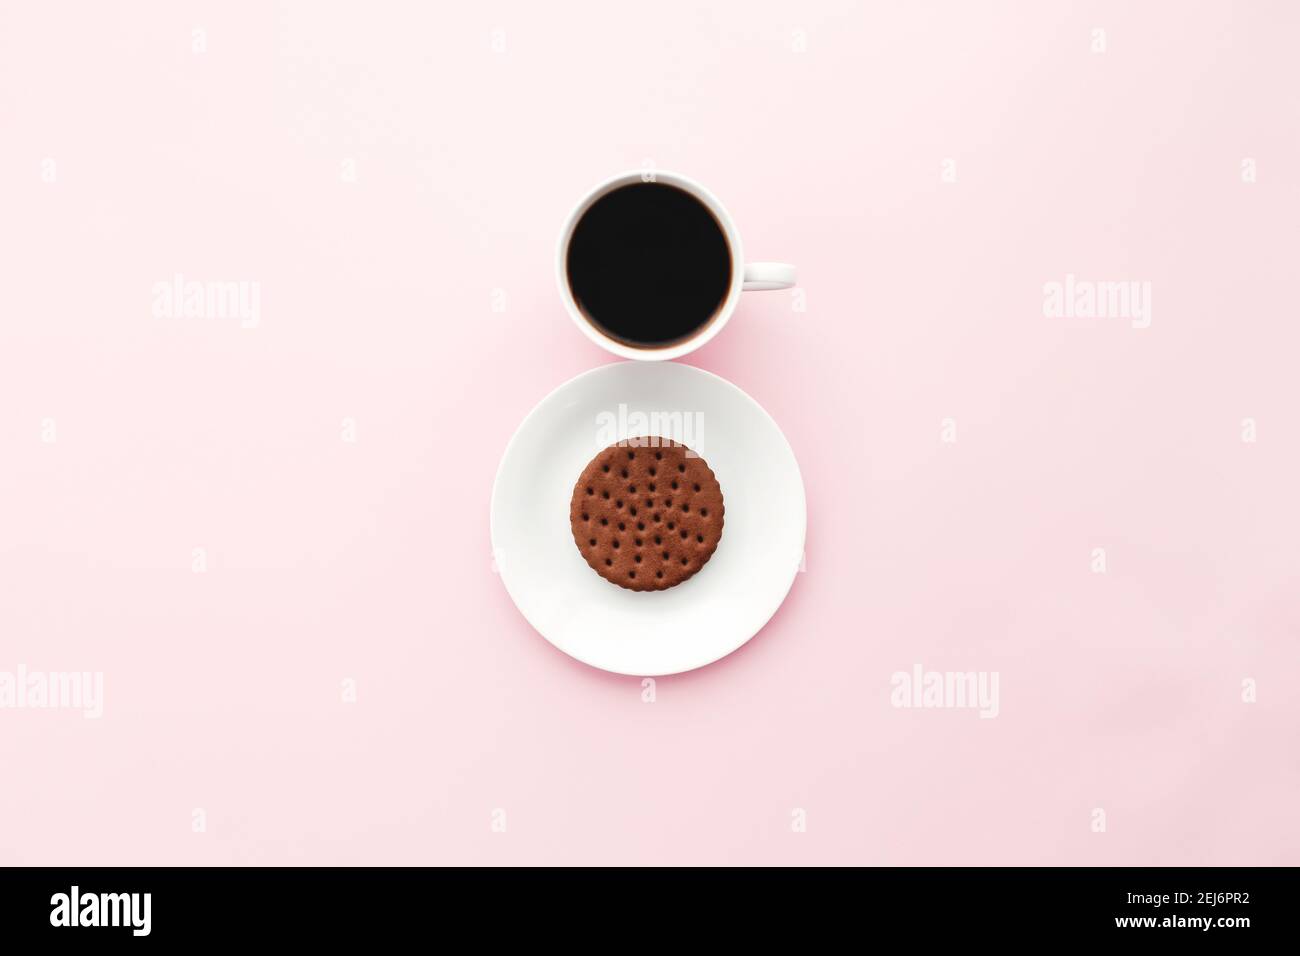 Femme internationale de jour concept, tasse de café, assiette, cookie sur fond rose. Photo de haute qualité Banque D'Images